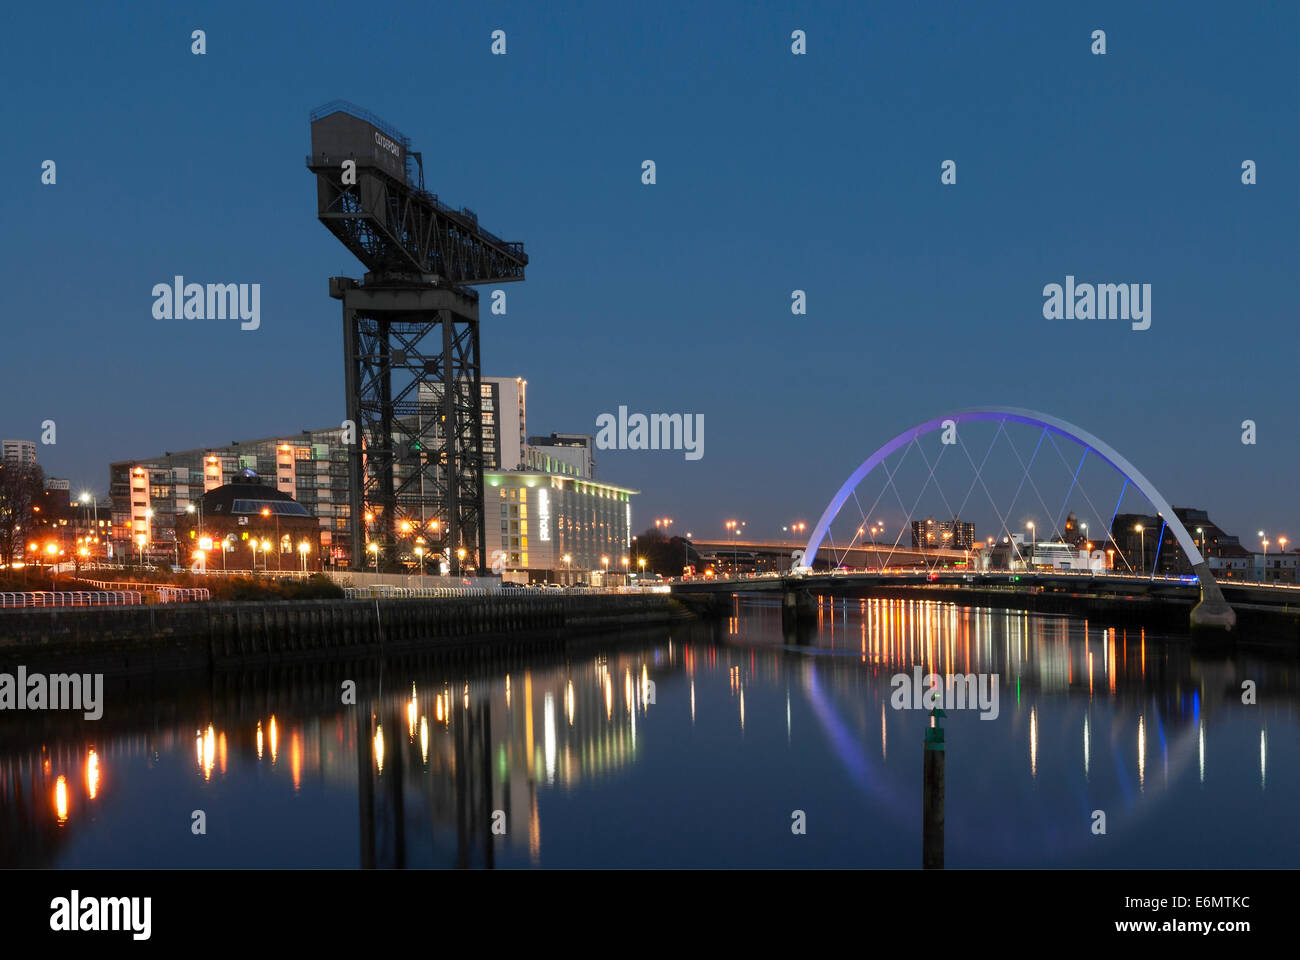 Fotografía nocturna del río Clyde con la Finnieston Crane y Clyde Arc Squinty Bridge (Puente) de Glasgow. Foto de stock